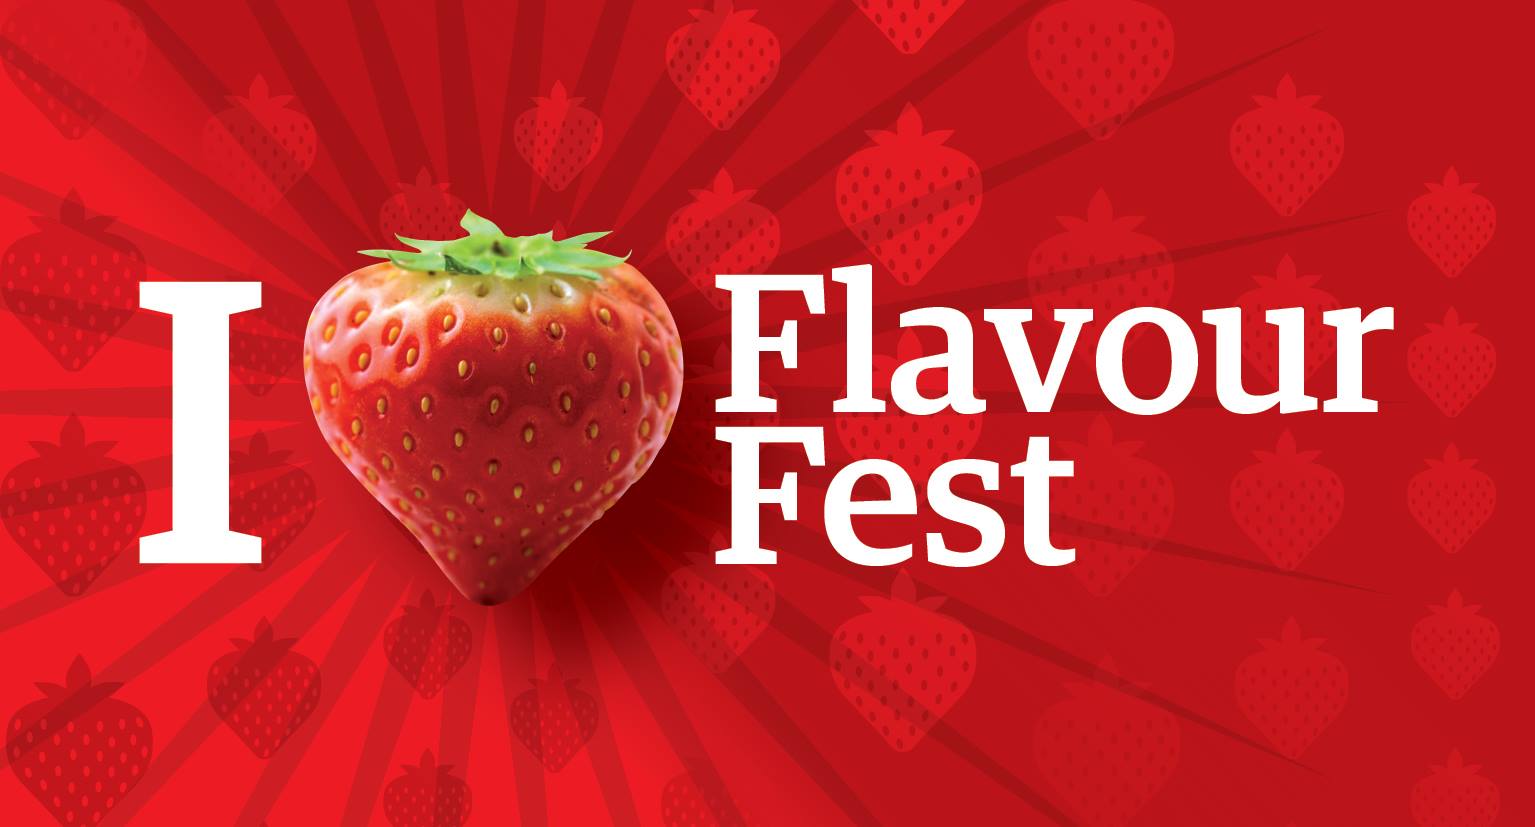 Flavour Fest,